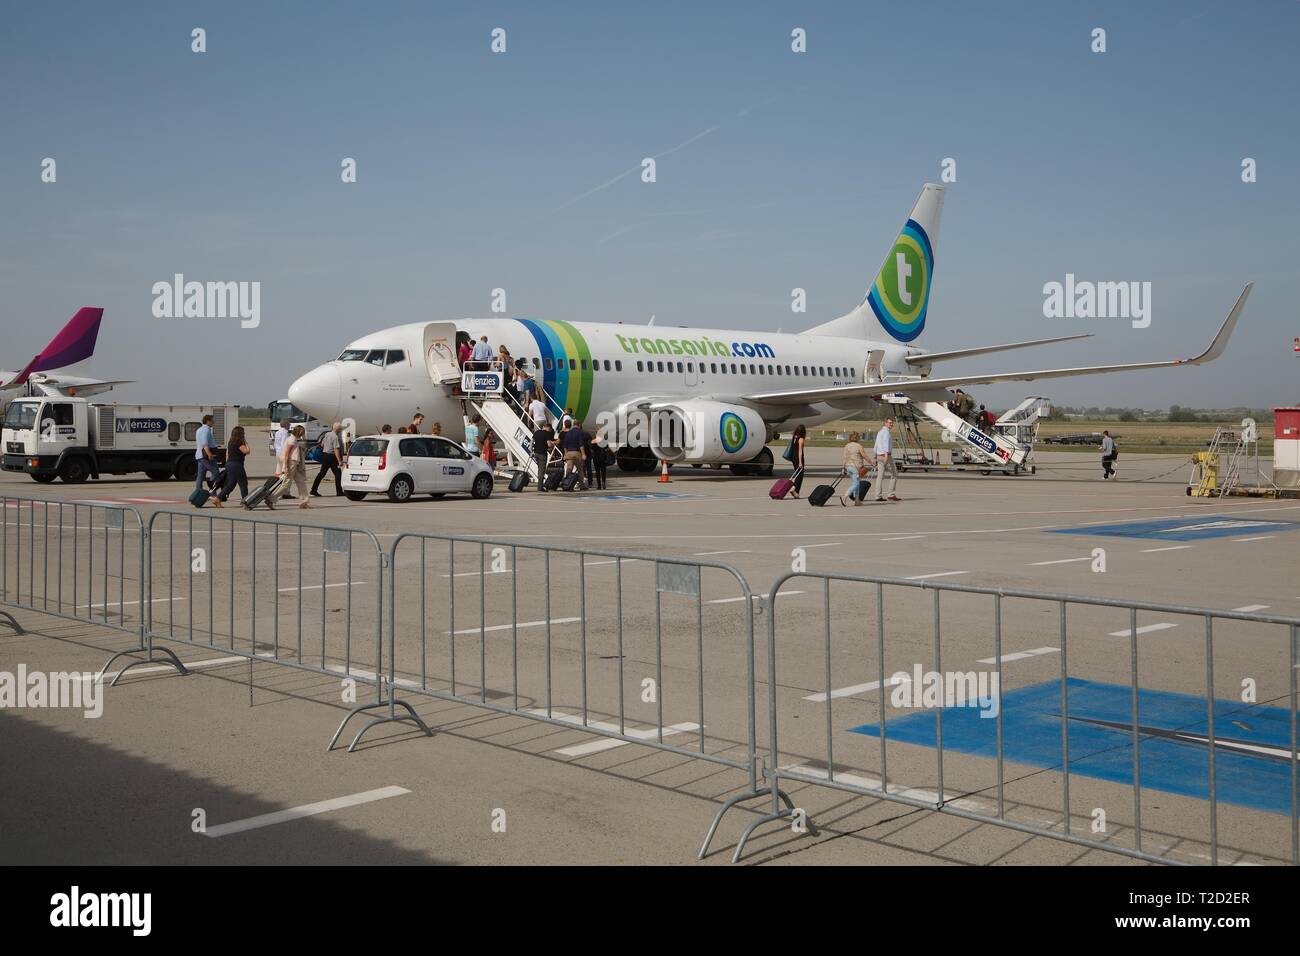 Transavia aircraft at an airport Stock Photo